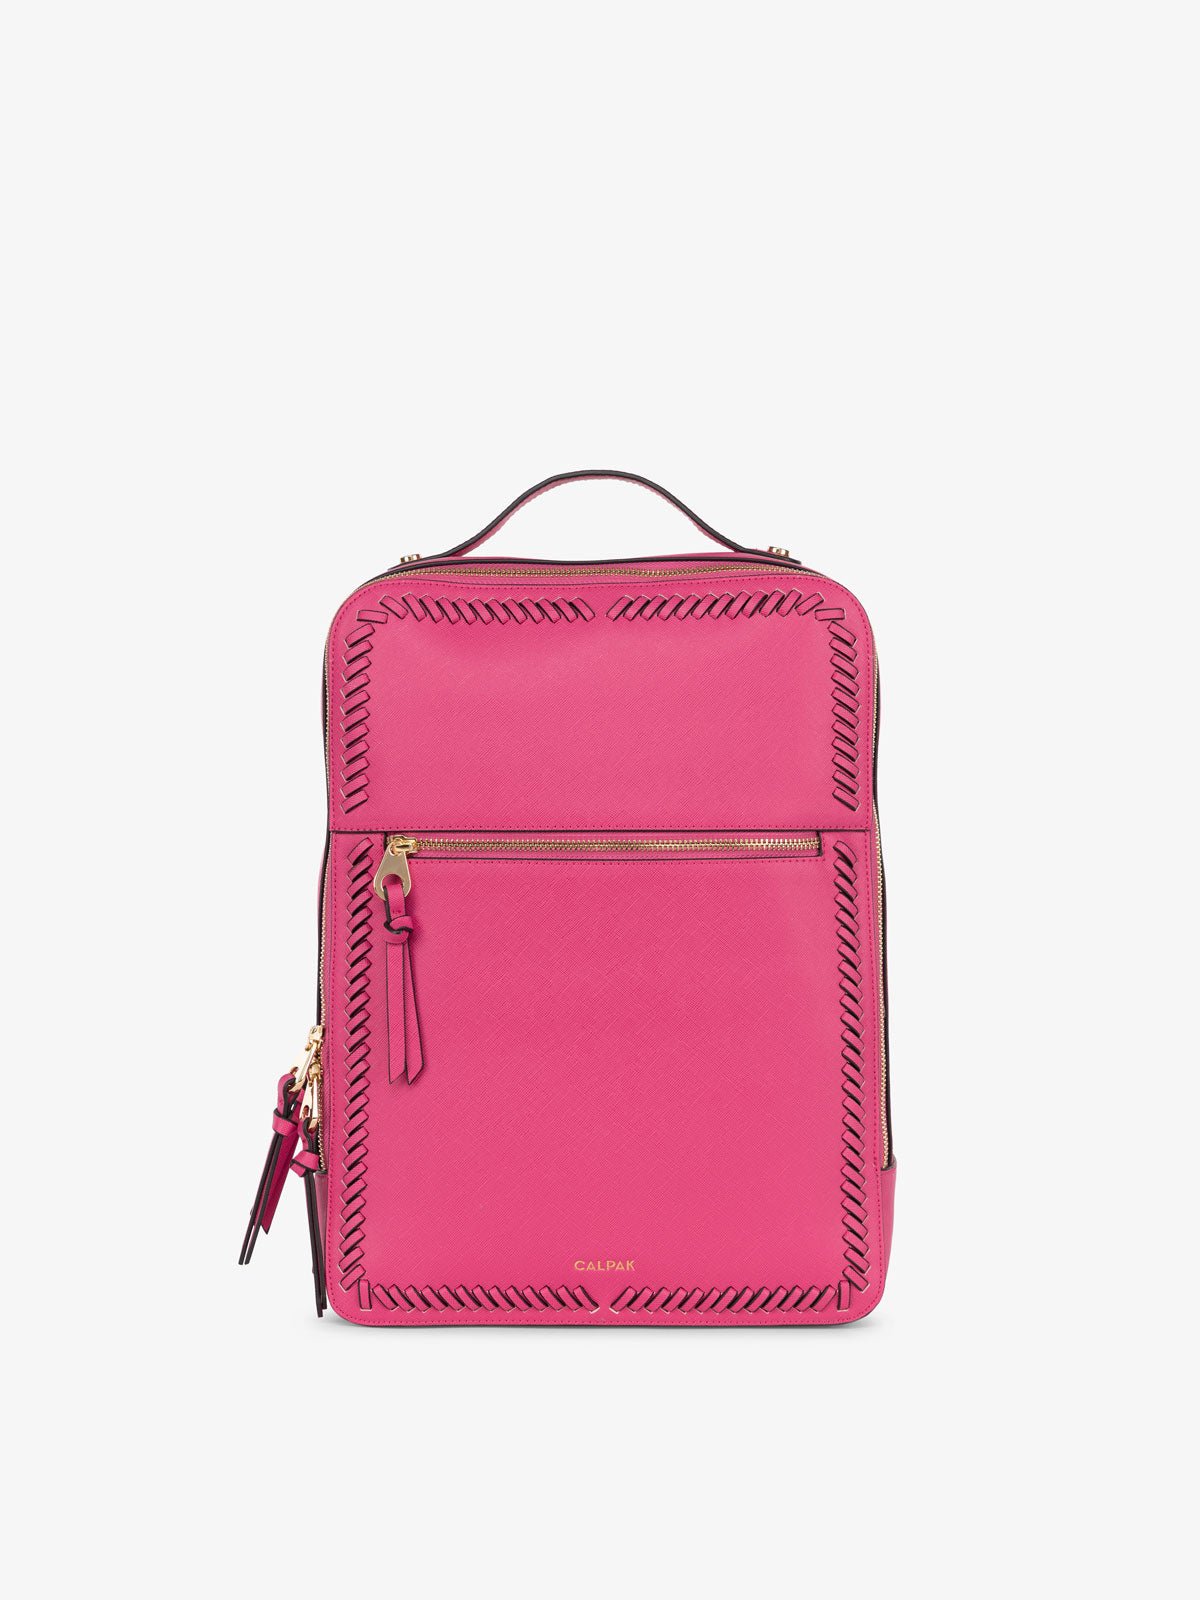 CALPAK Kaya laptop backpack in pink dragonfruit